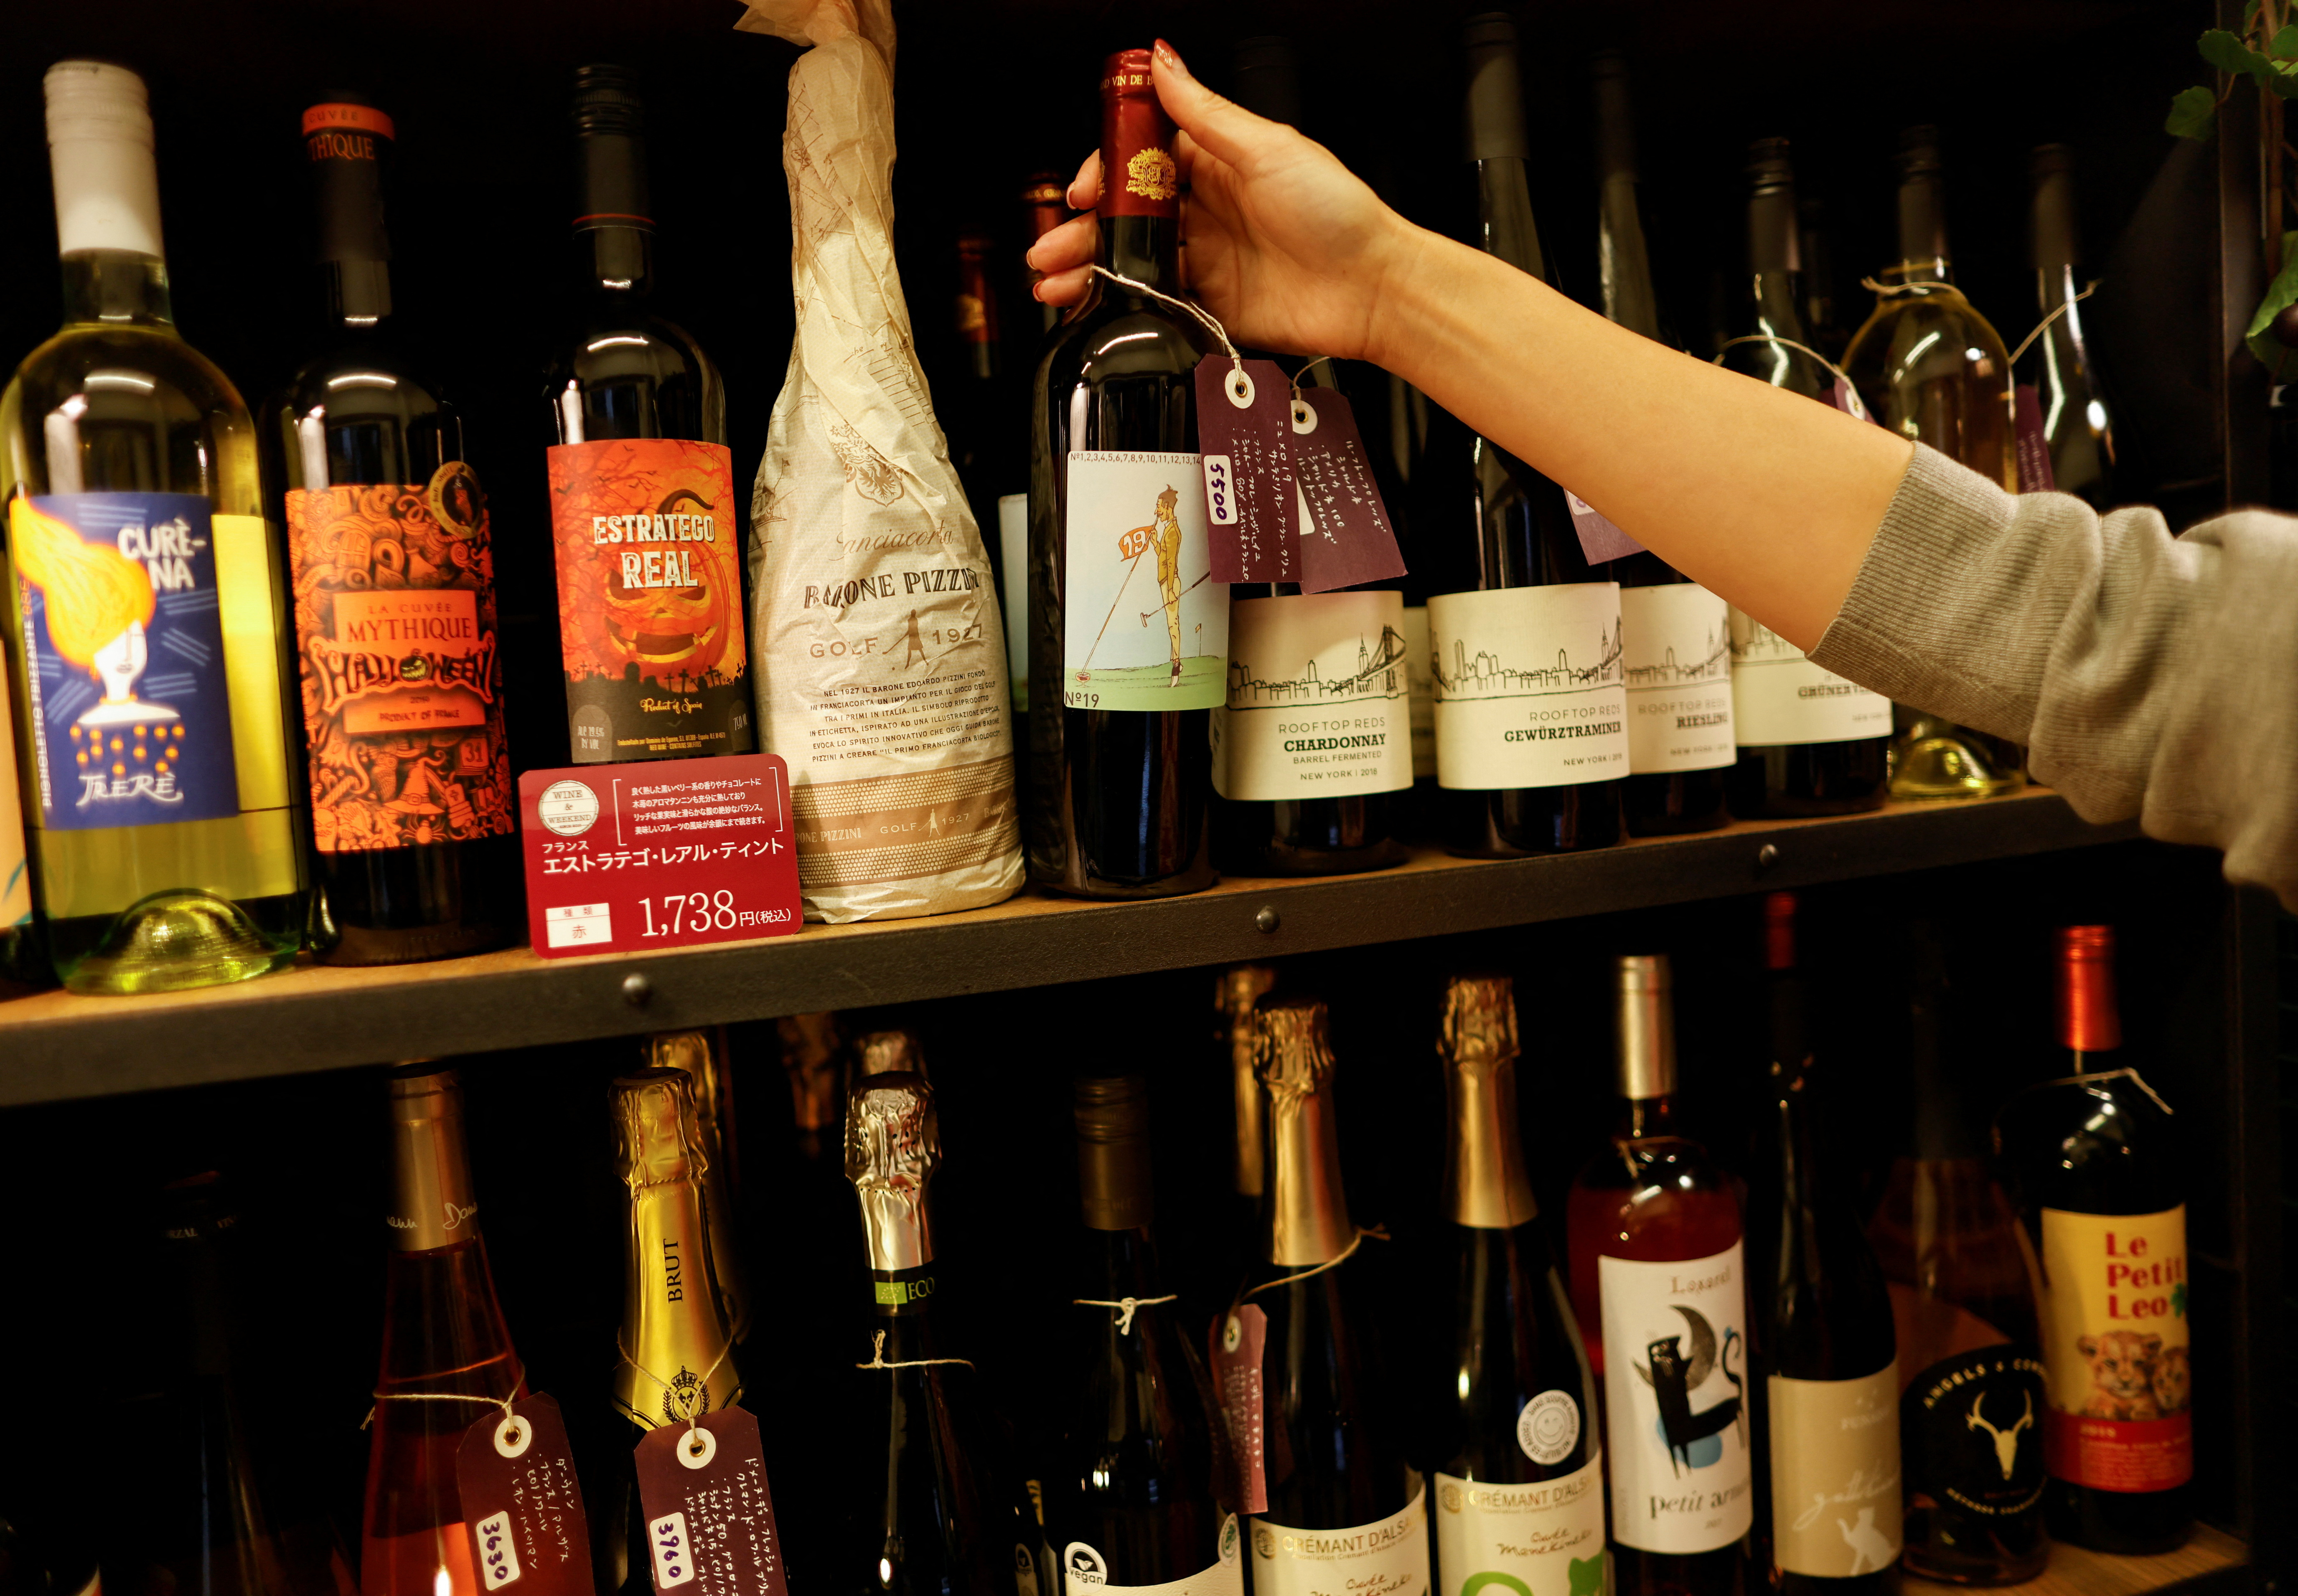 Los vinos importados de diferentes países, incluidos los EE. UU., se exhiben en la tienda de vinos 'Wine and Weekend' en Tokio